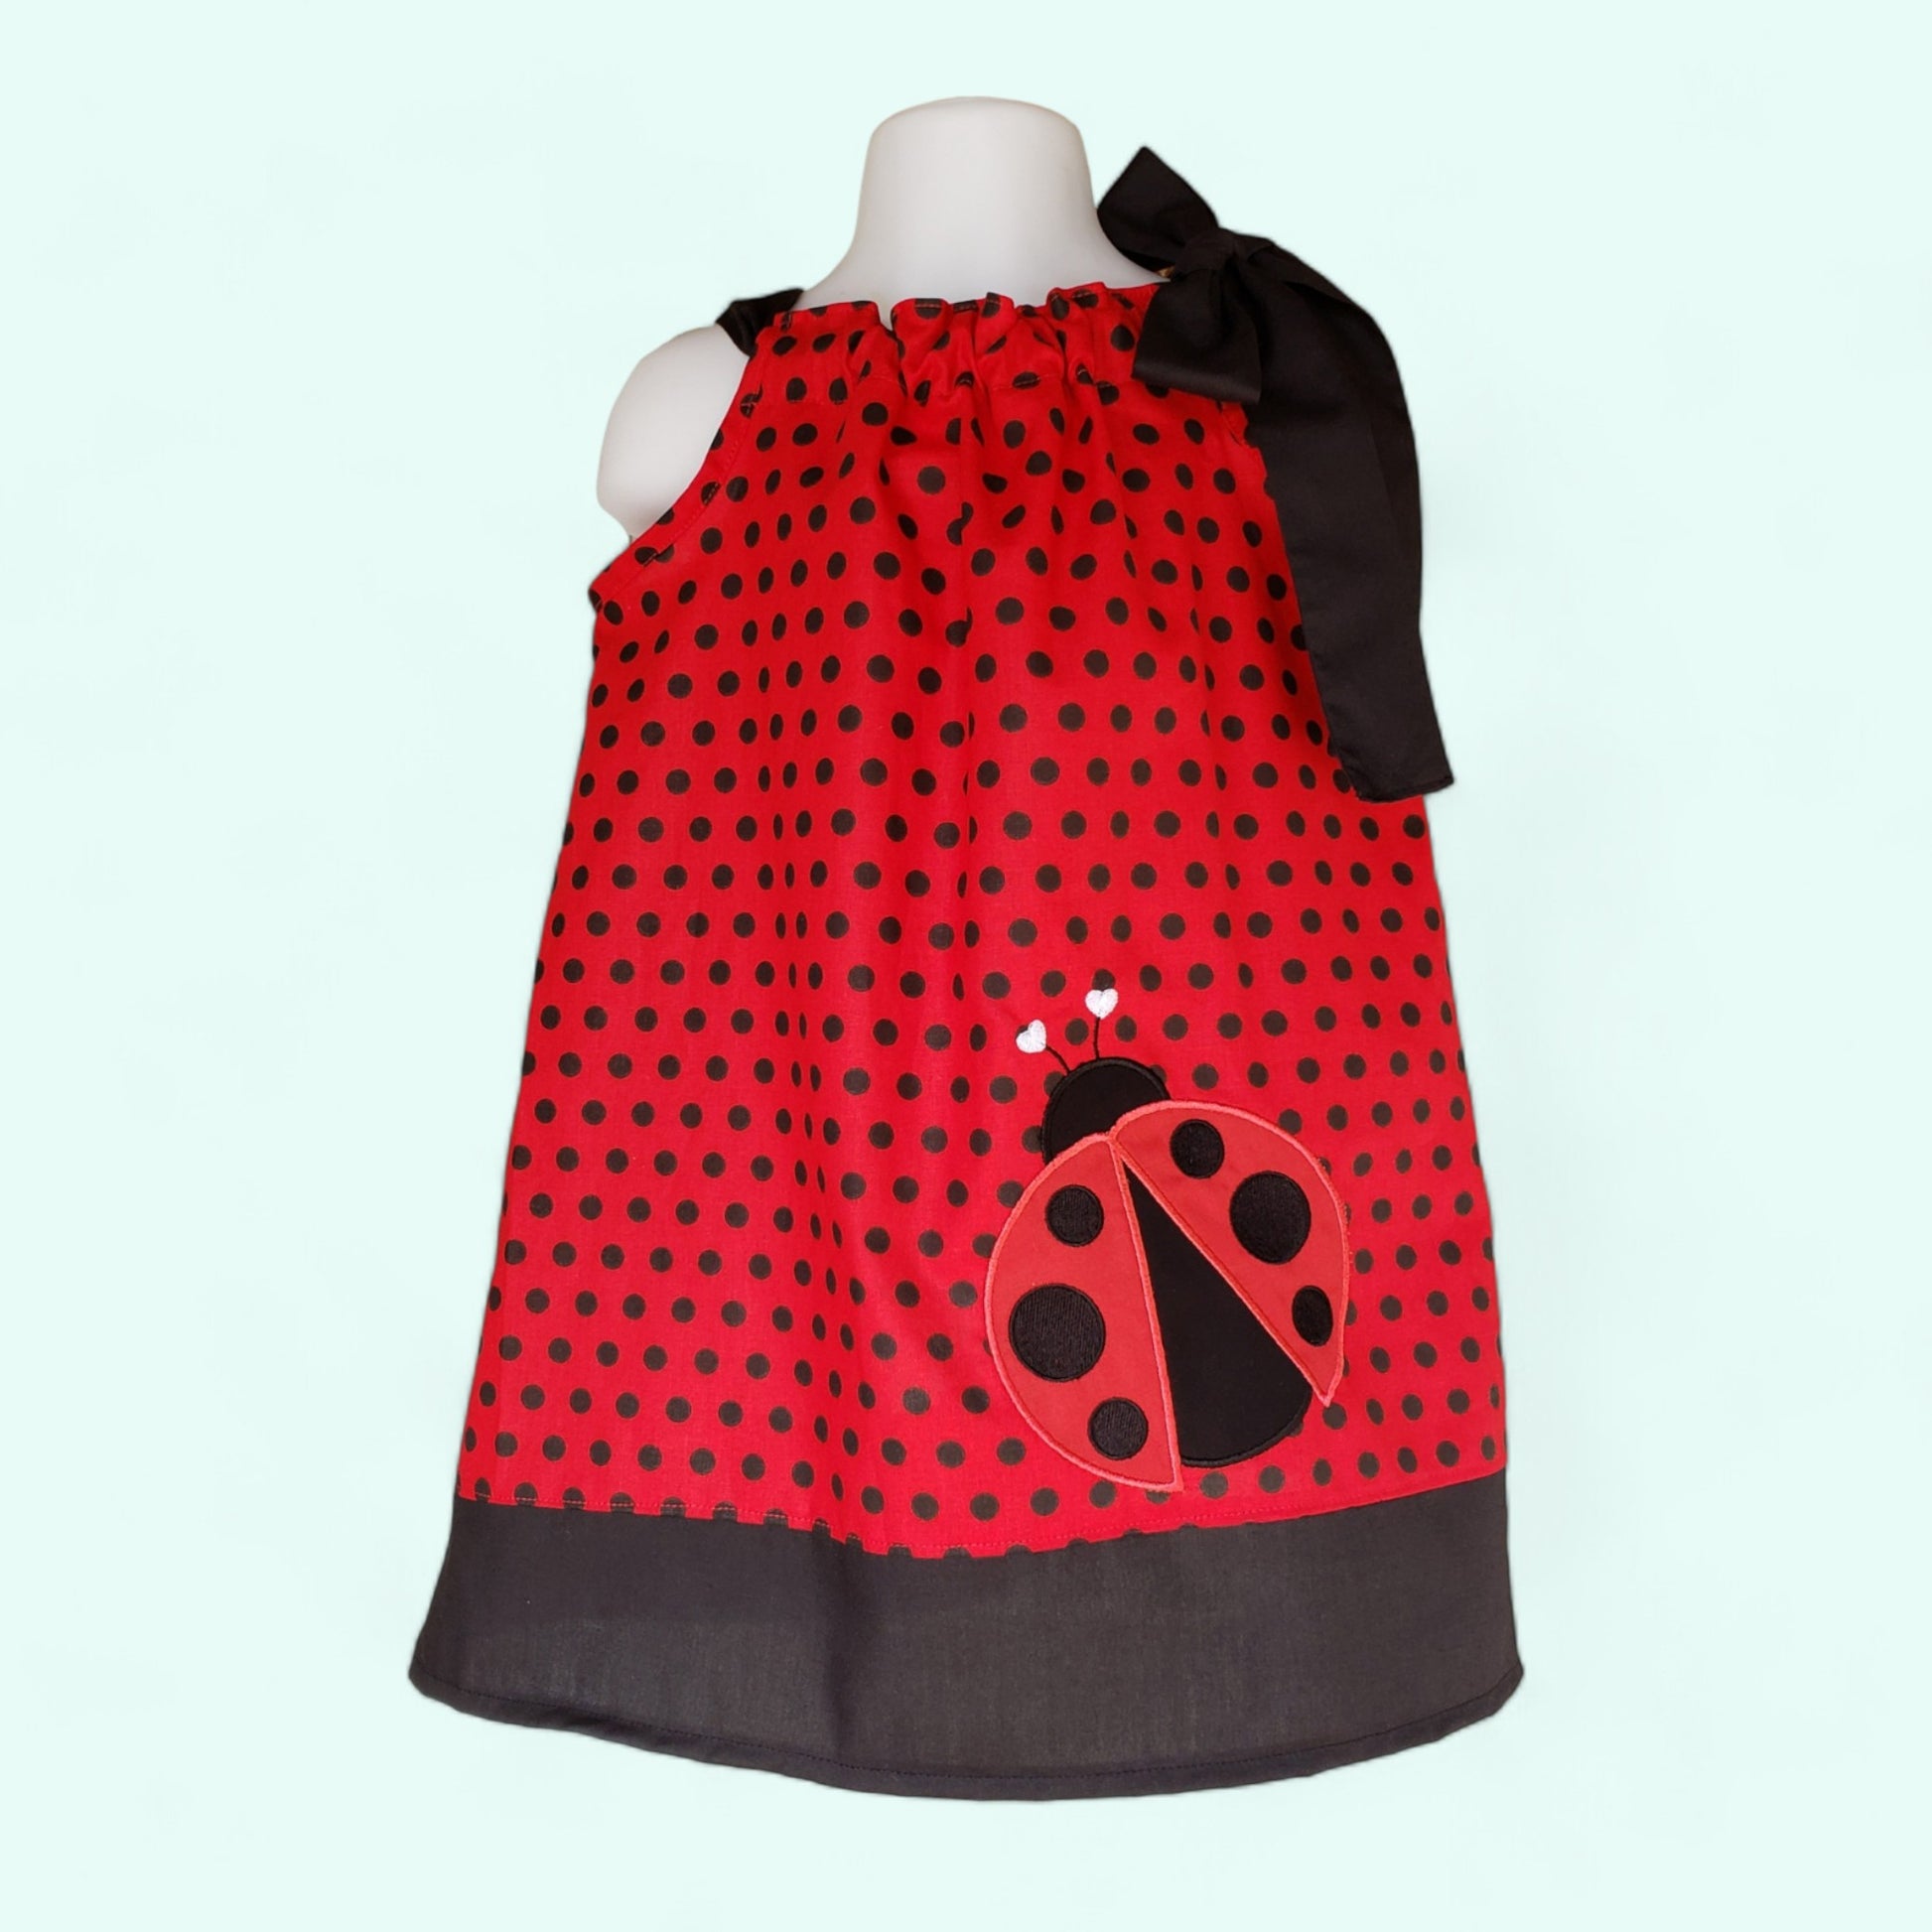 Ladybug Pillowcase dress